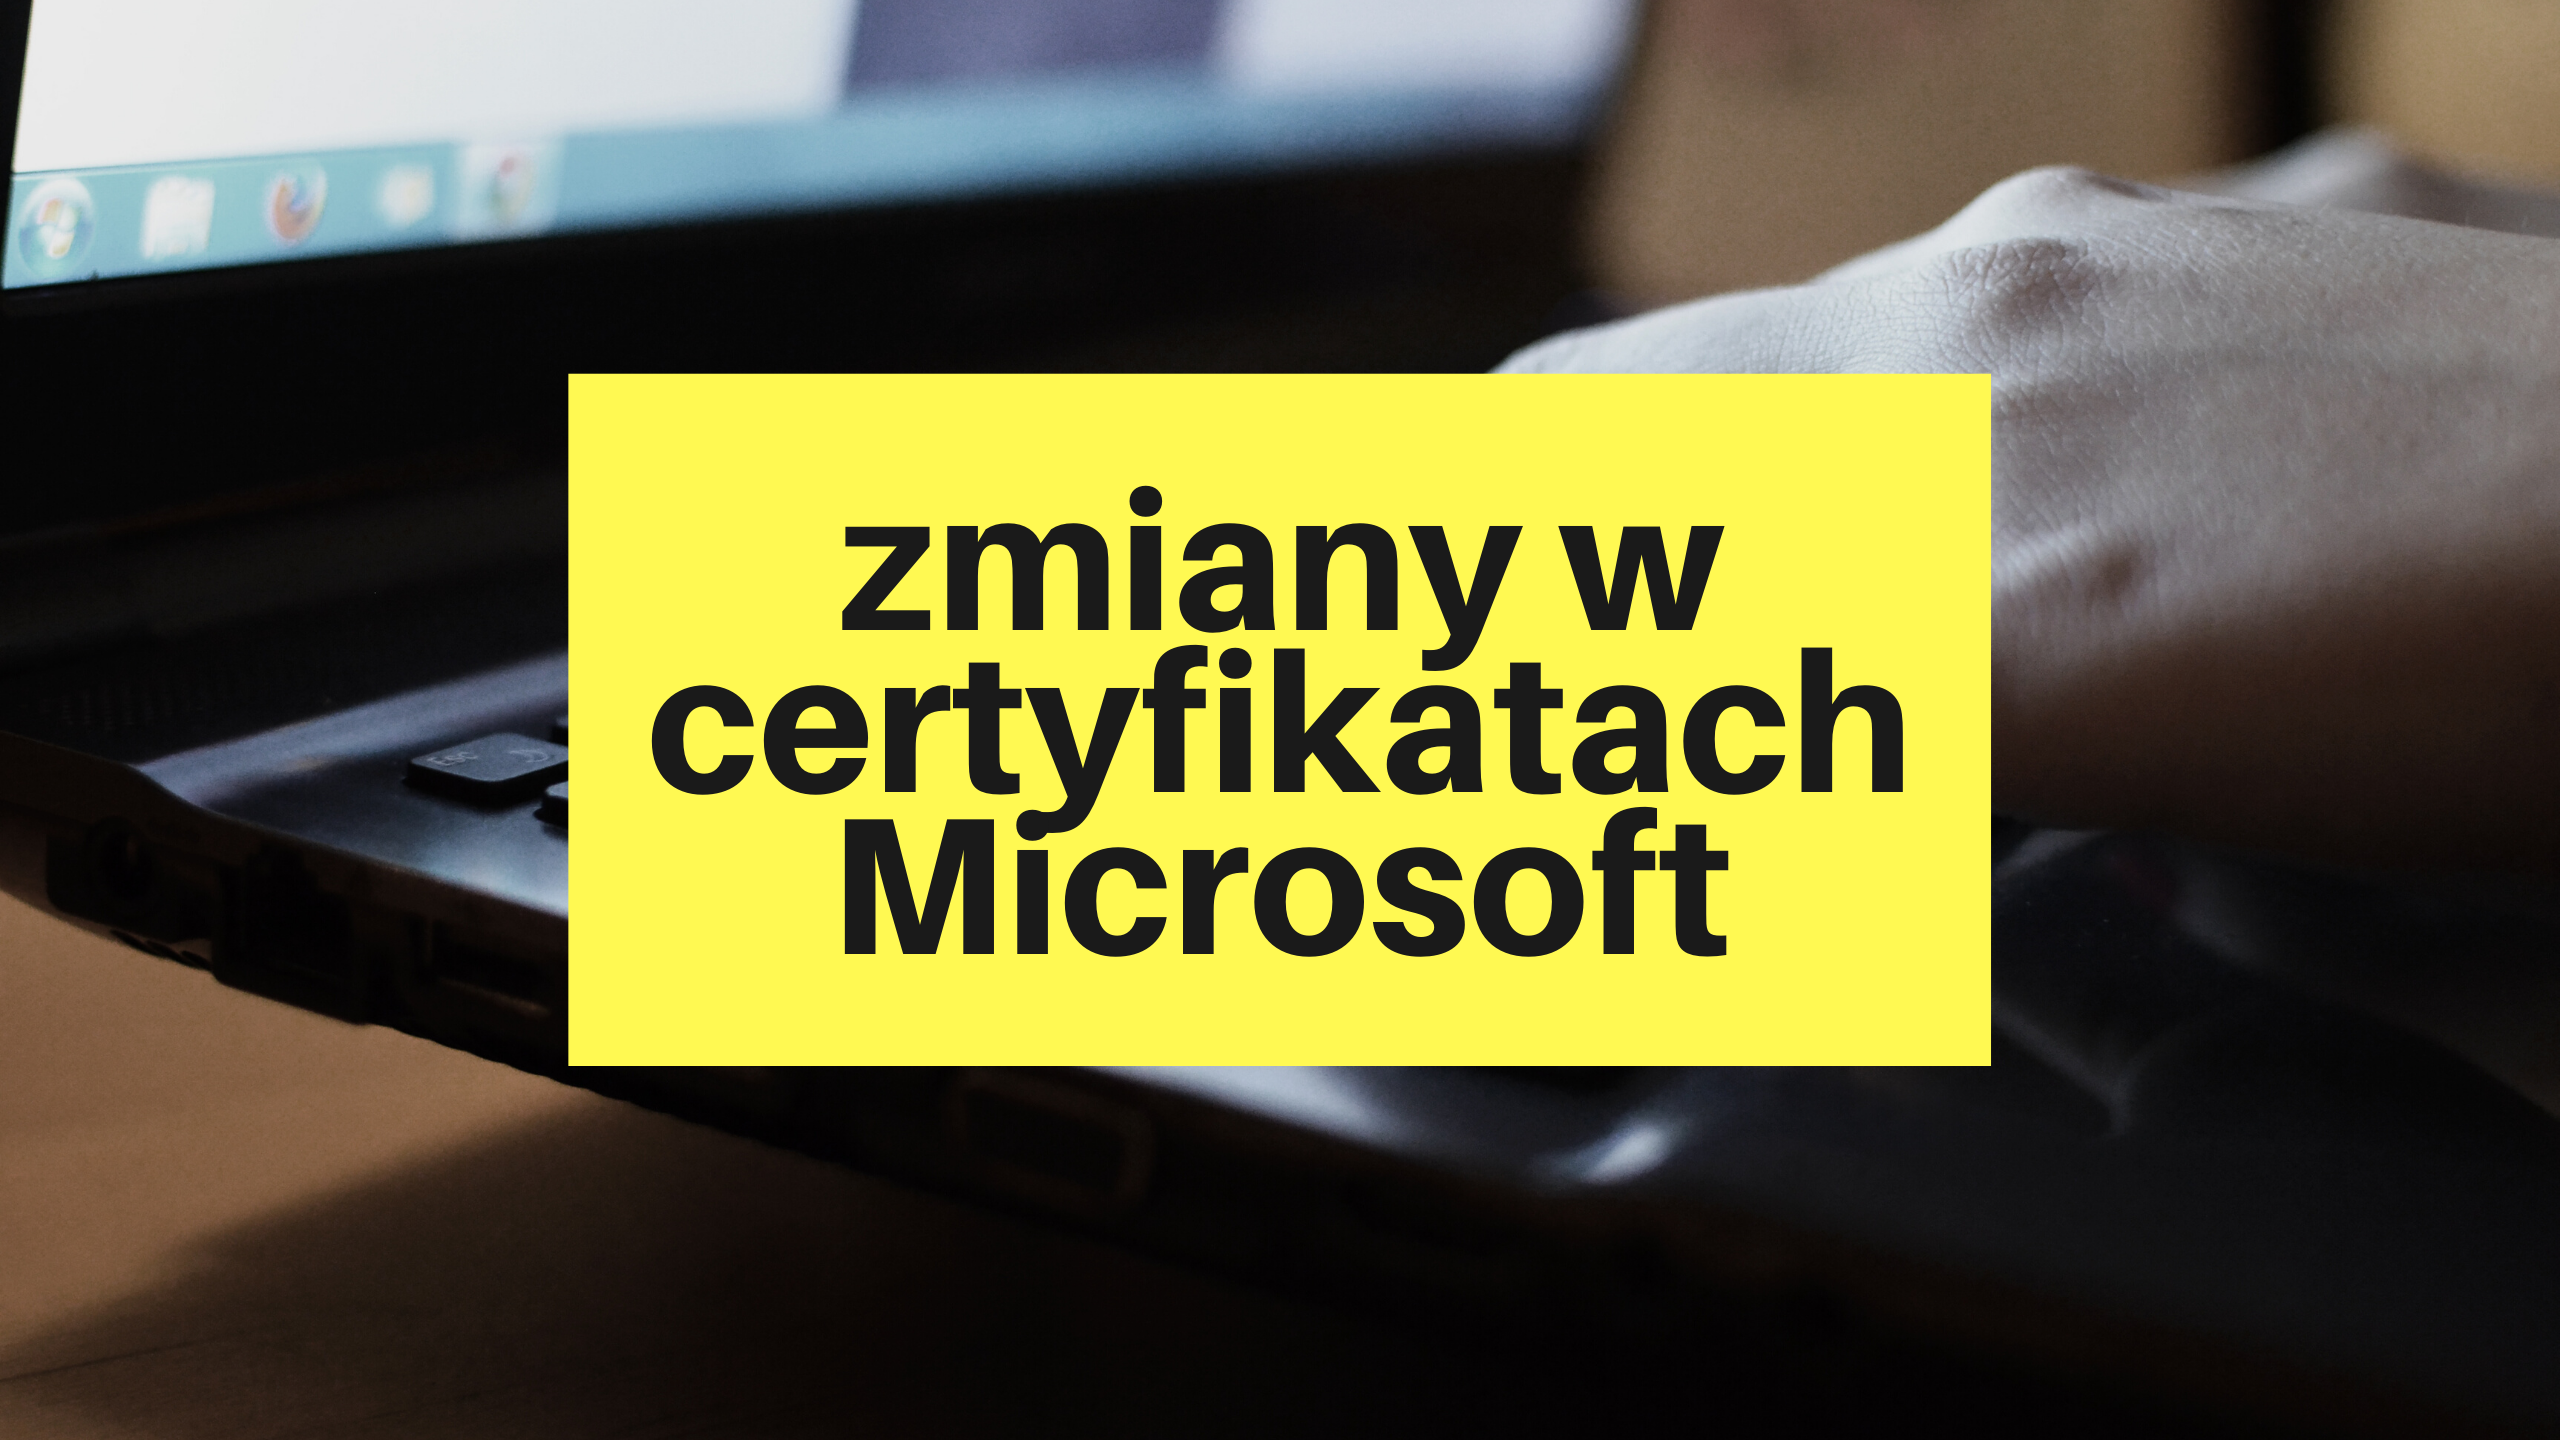 Zmiany w certyfikatach Microsoft